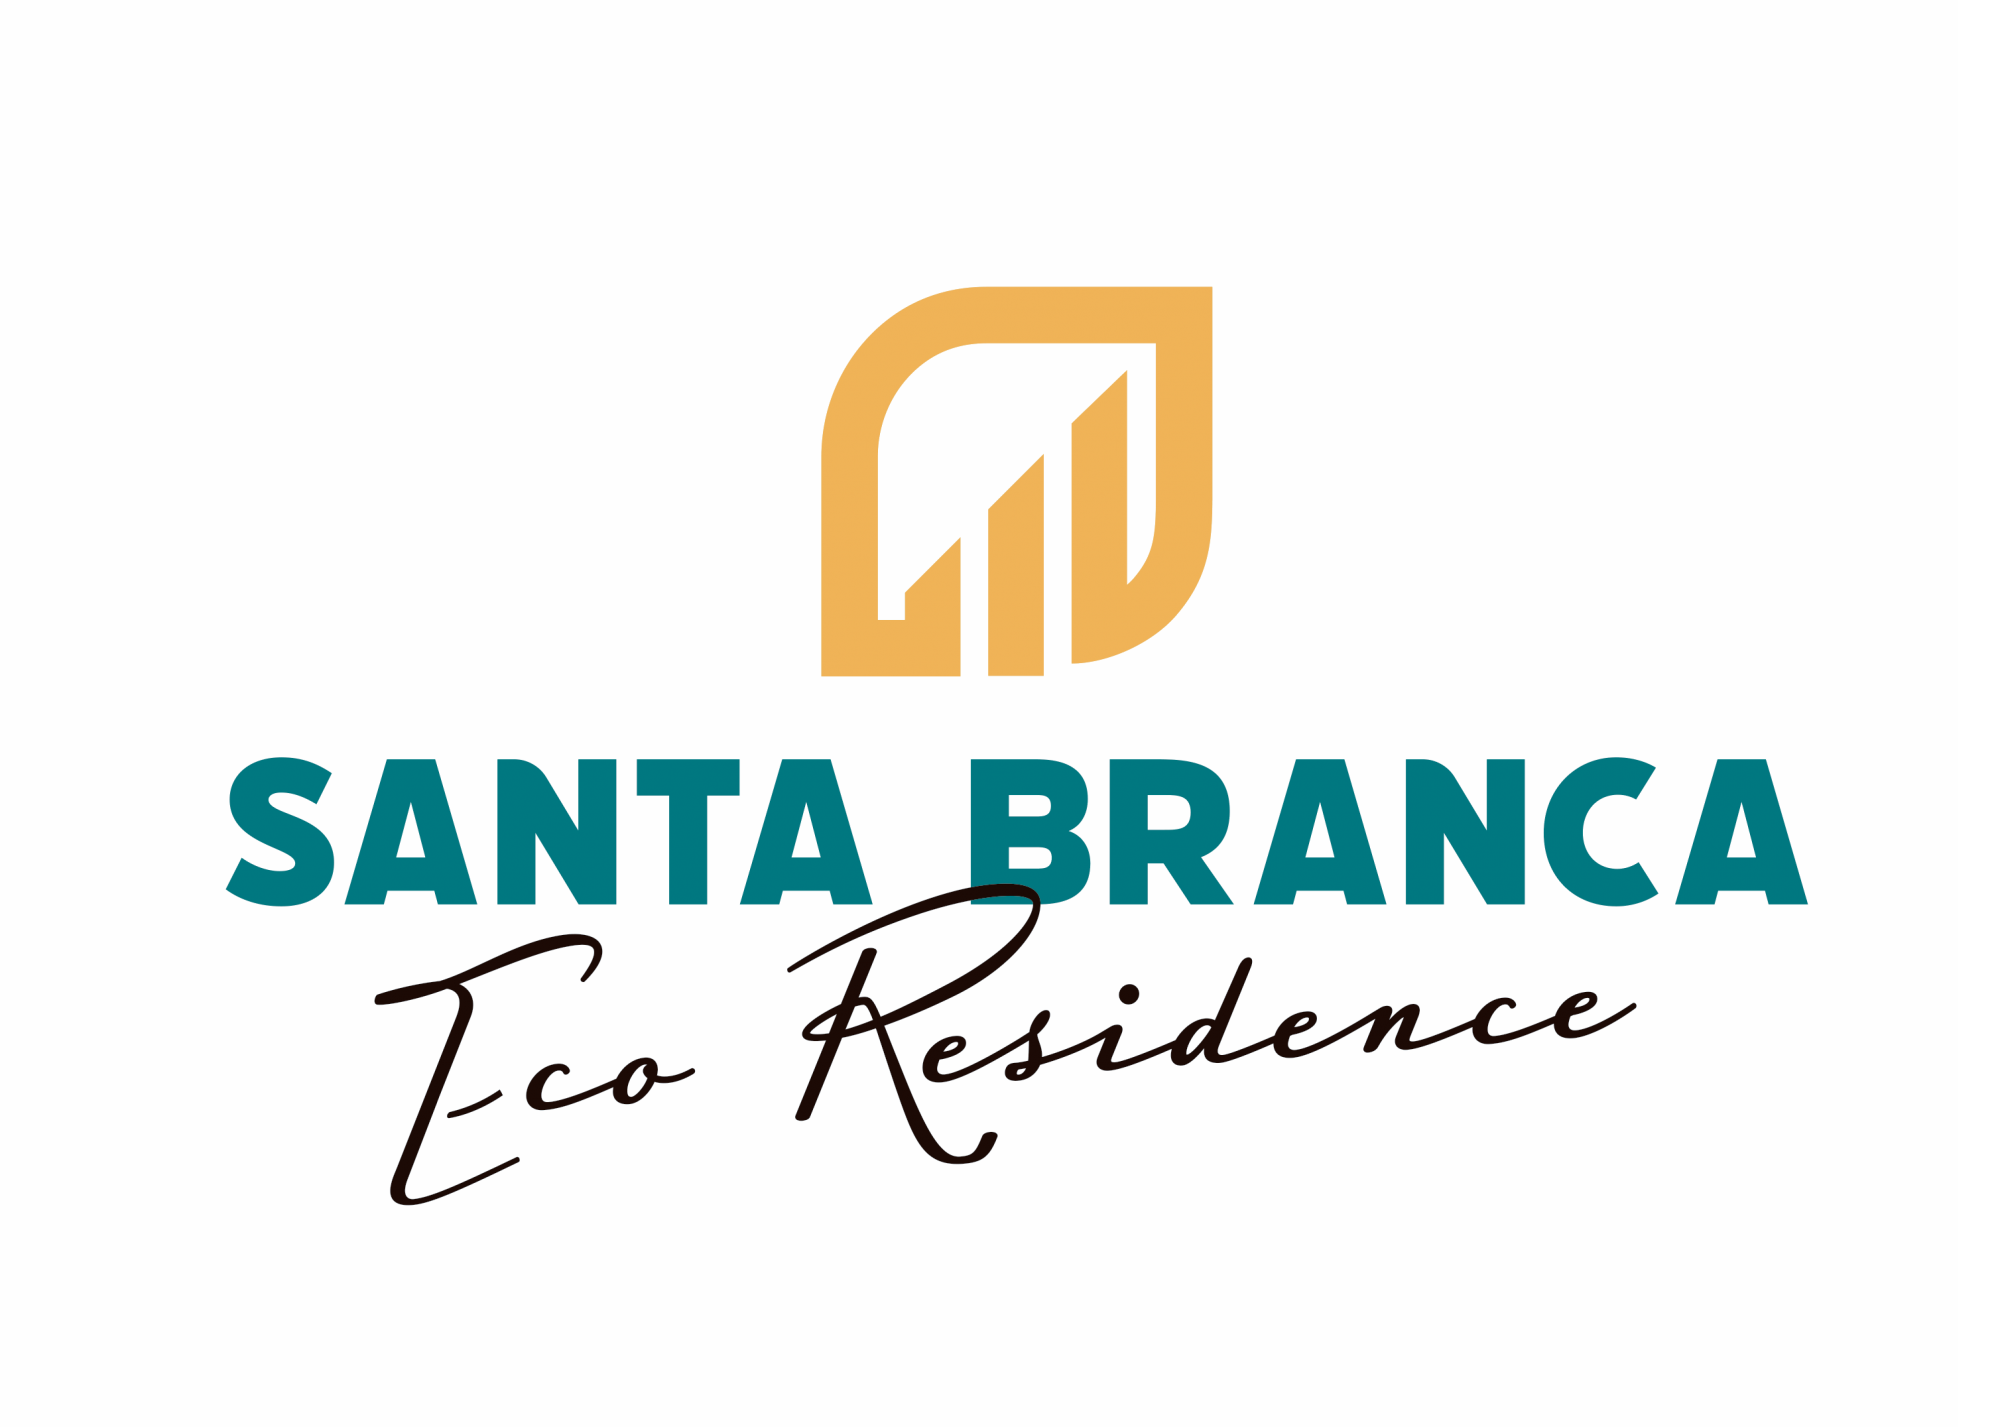 Santa Branca Eco Residence